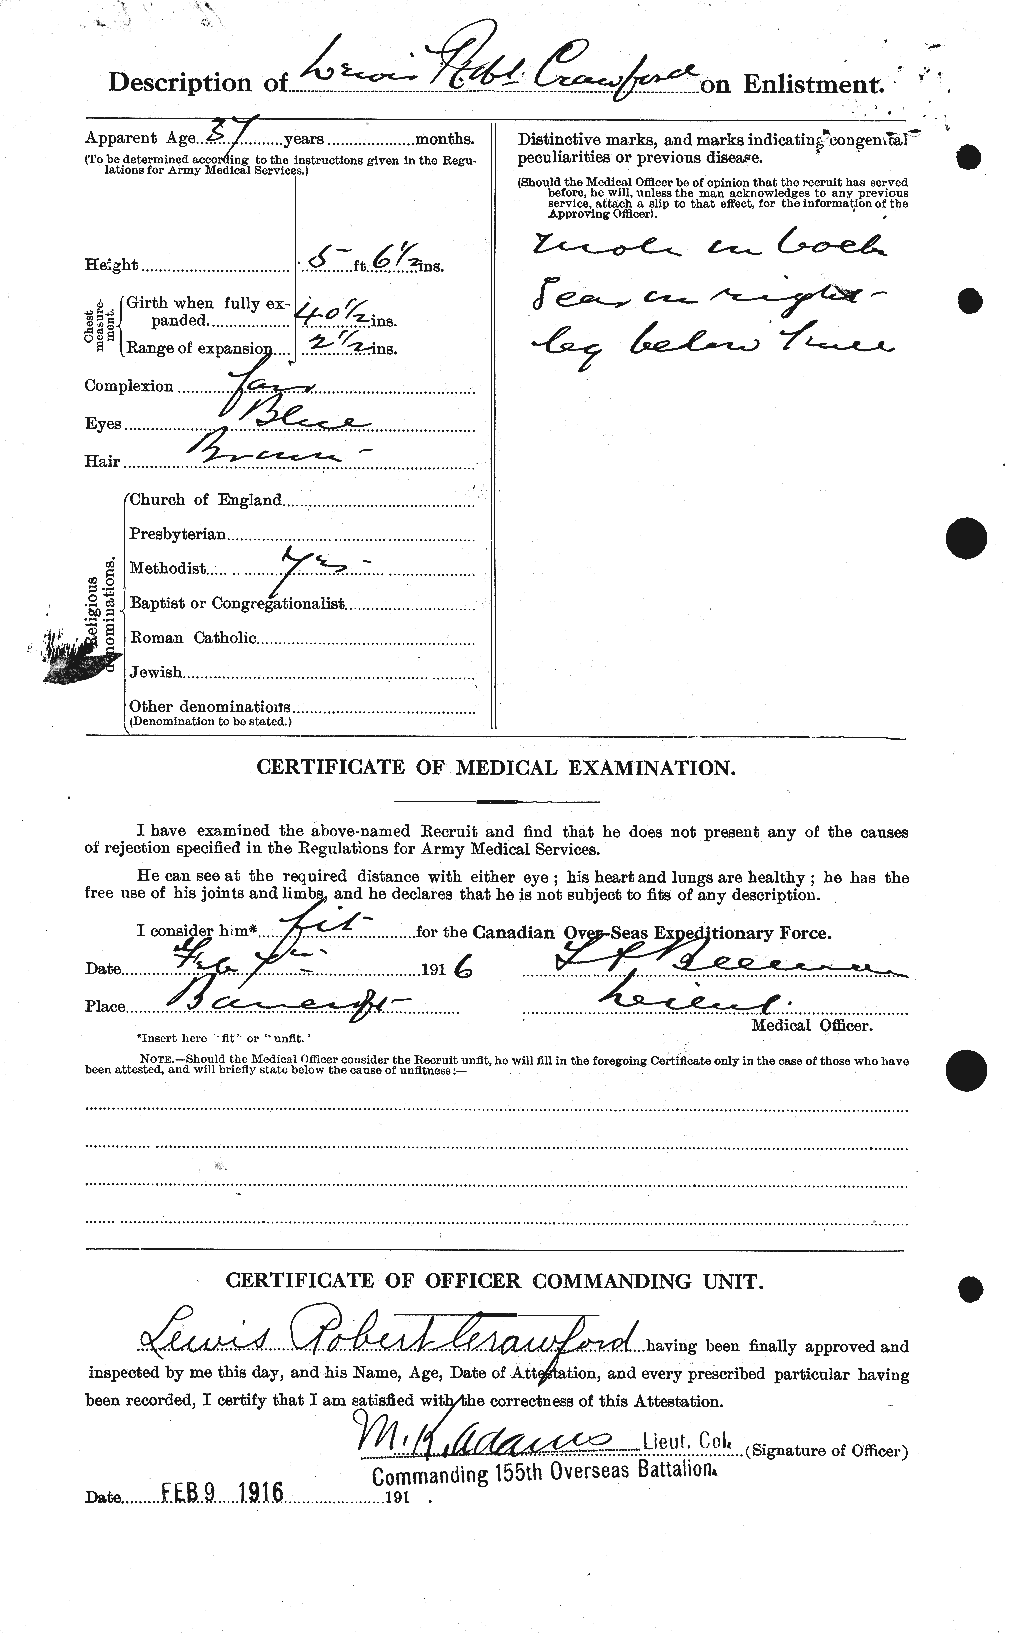 Dossiers du Personnel de la Première Guerre mondiale - CEC 061795b